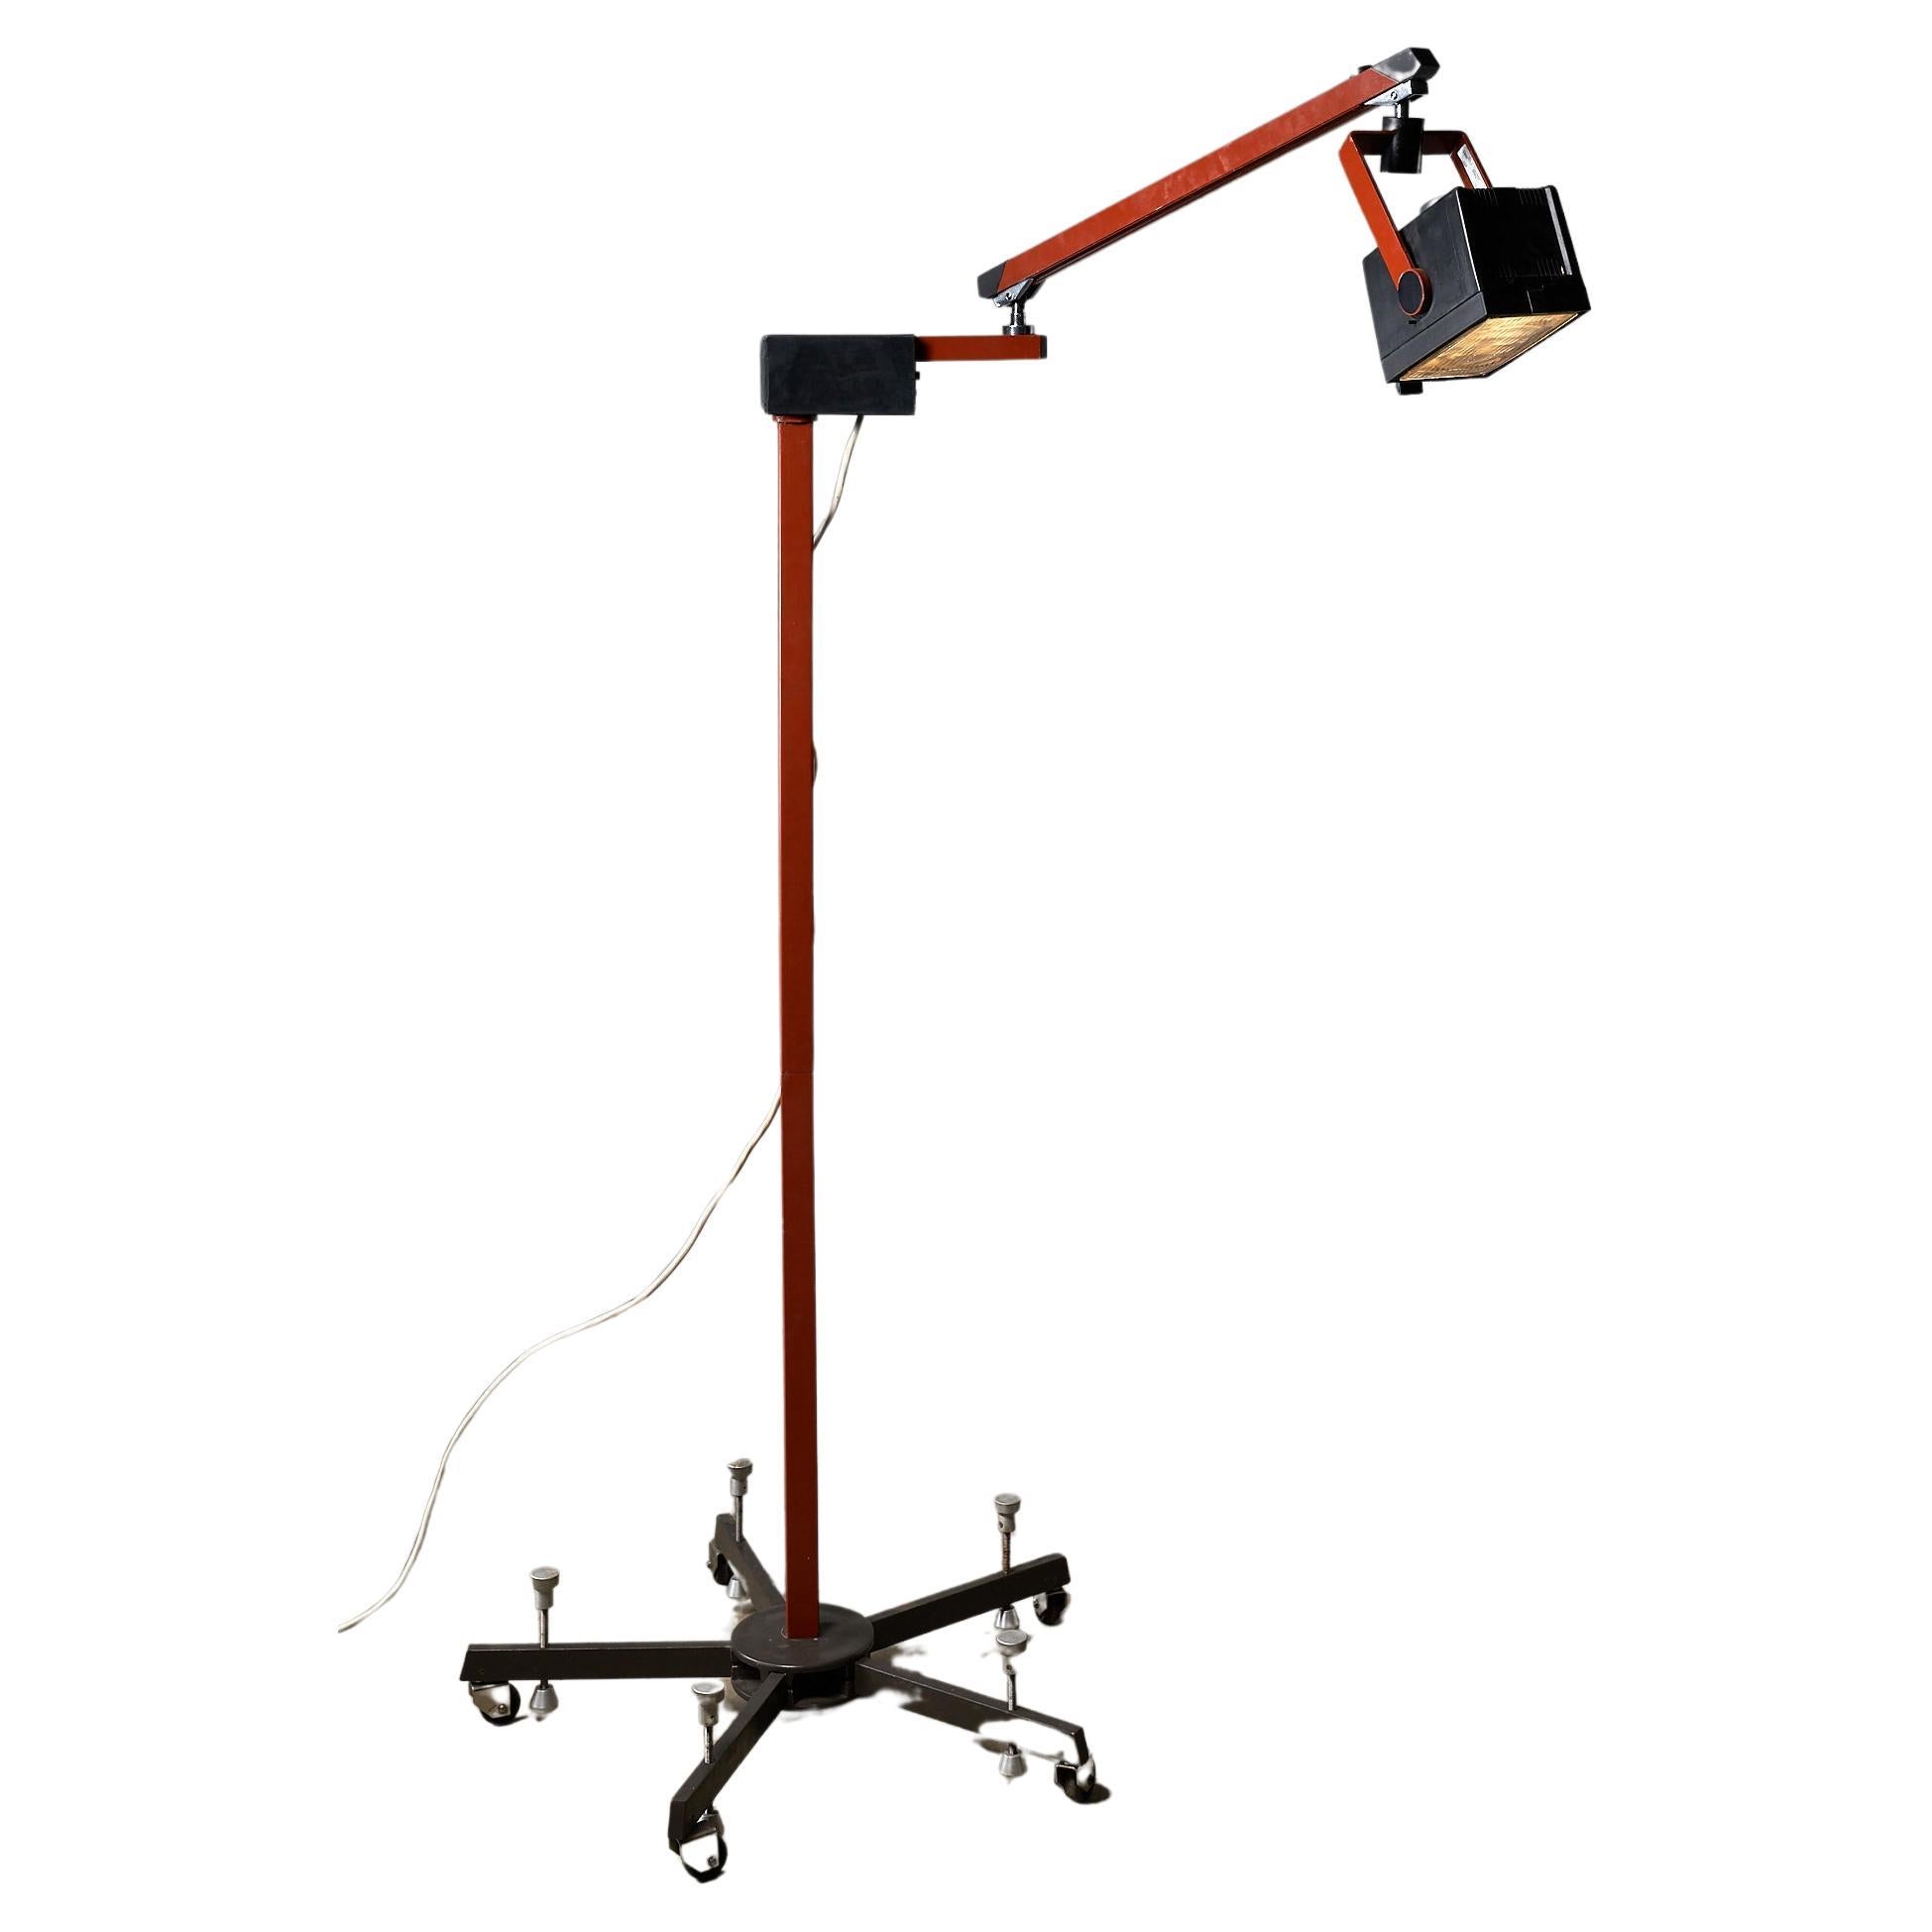 Nous proposons 4 de ces lampadaires industriels médicaux, dotés d'un design fonctionnel remarquable. Le bras supérieur de ces lampes peut pivoter dans différentes directions, offrant ainsi des options d'éclairage polyvalentes. Qu'elles soient